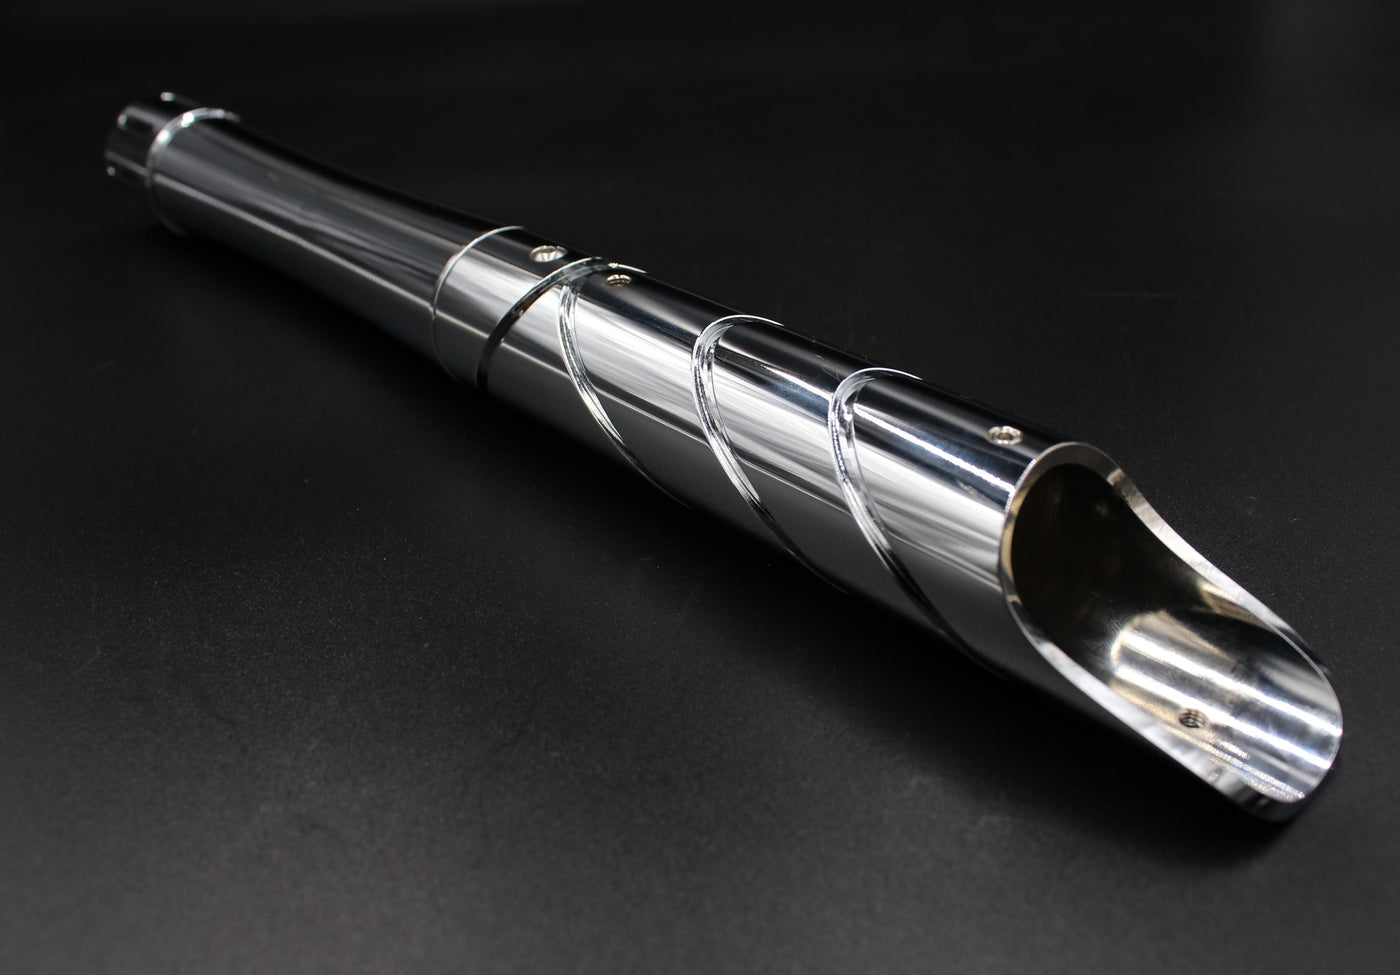 Elegance - KenJo Sabers - Star Wars Lightsaber replica Jedi Sith - Best sabershop Europe - Nederland light sabers kopen -